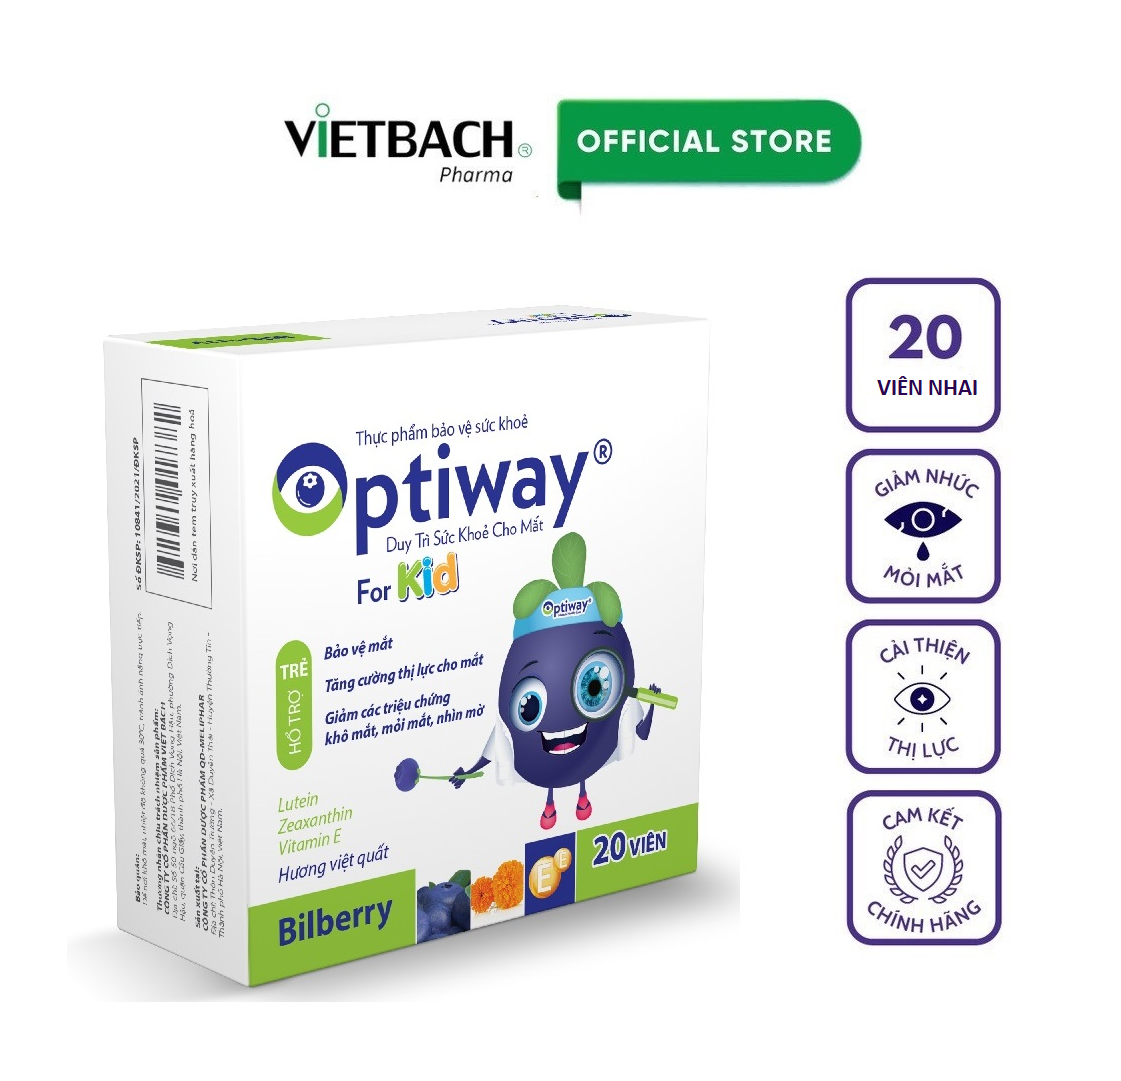 kẹo nhai optiway for kid hỗ trợ tăng cường thị lực, bảo vệ đôi mắt trẻ (hộp 20 viên hươngviệt quất tự nhiên) 1